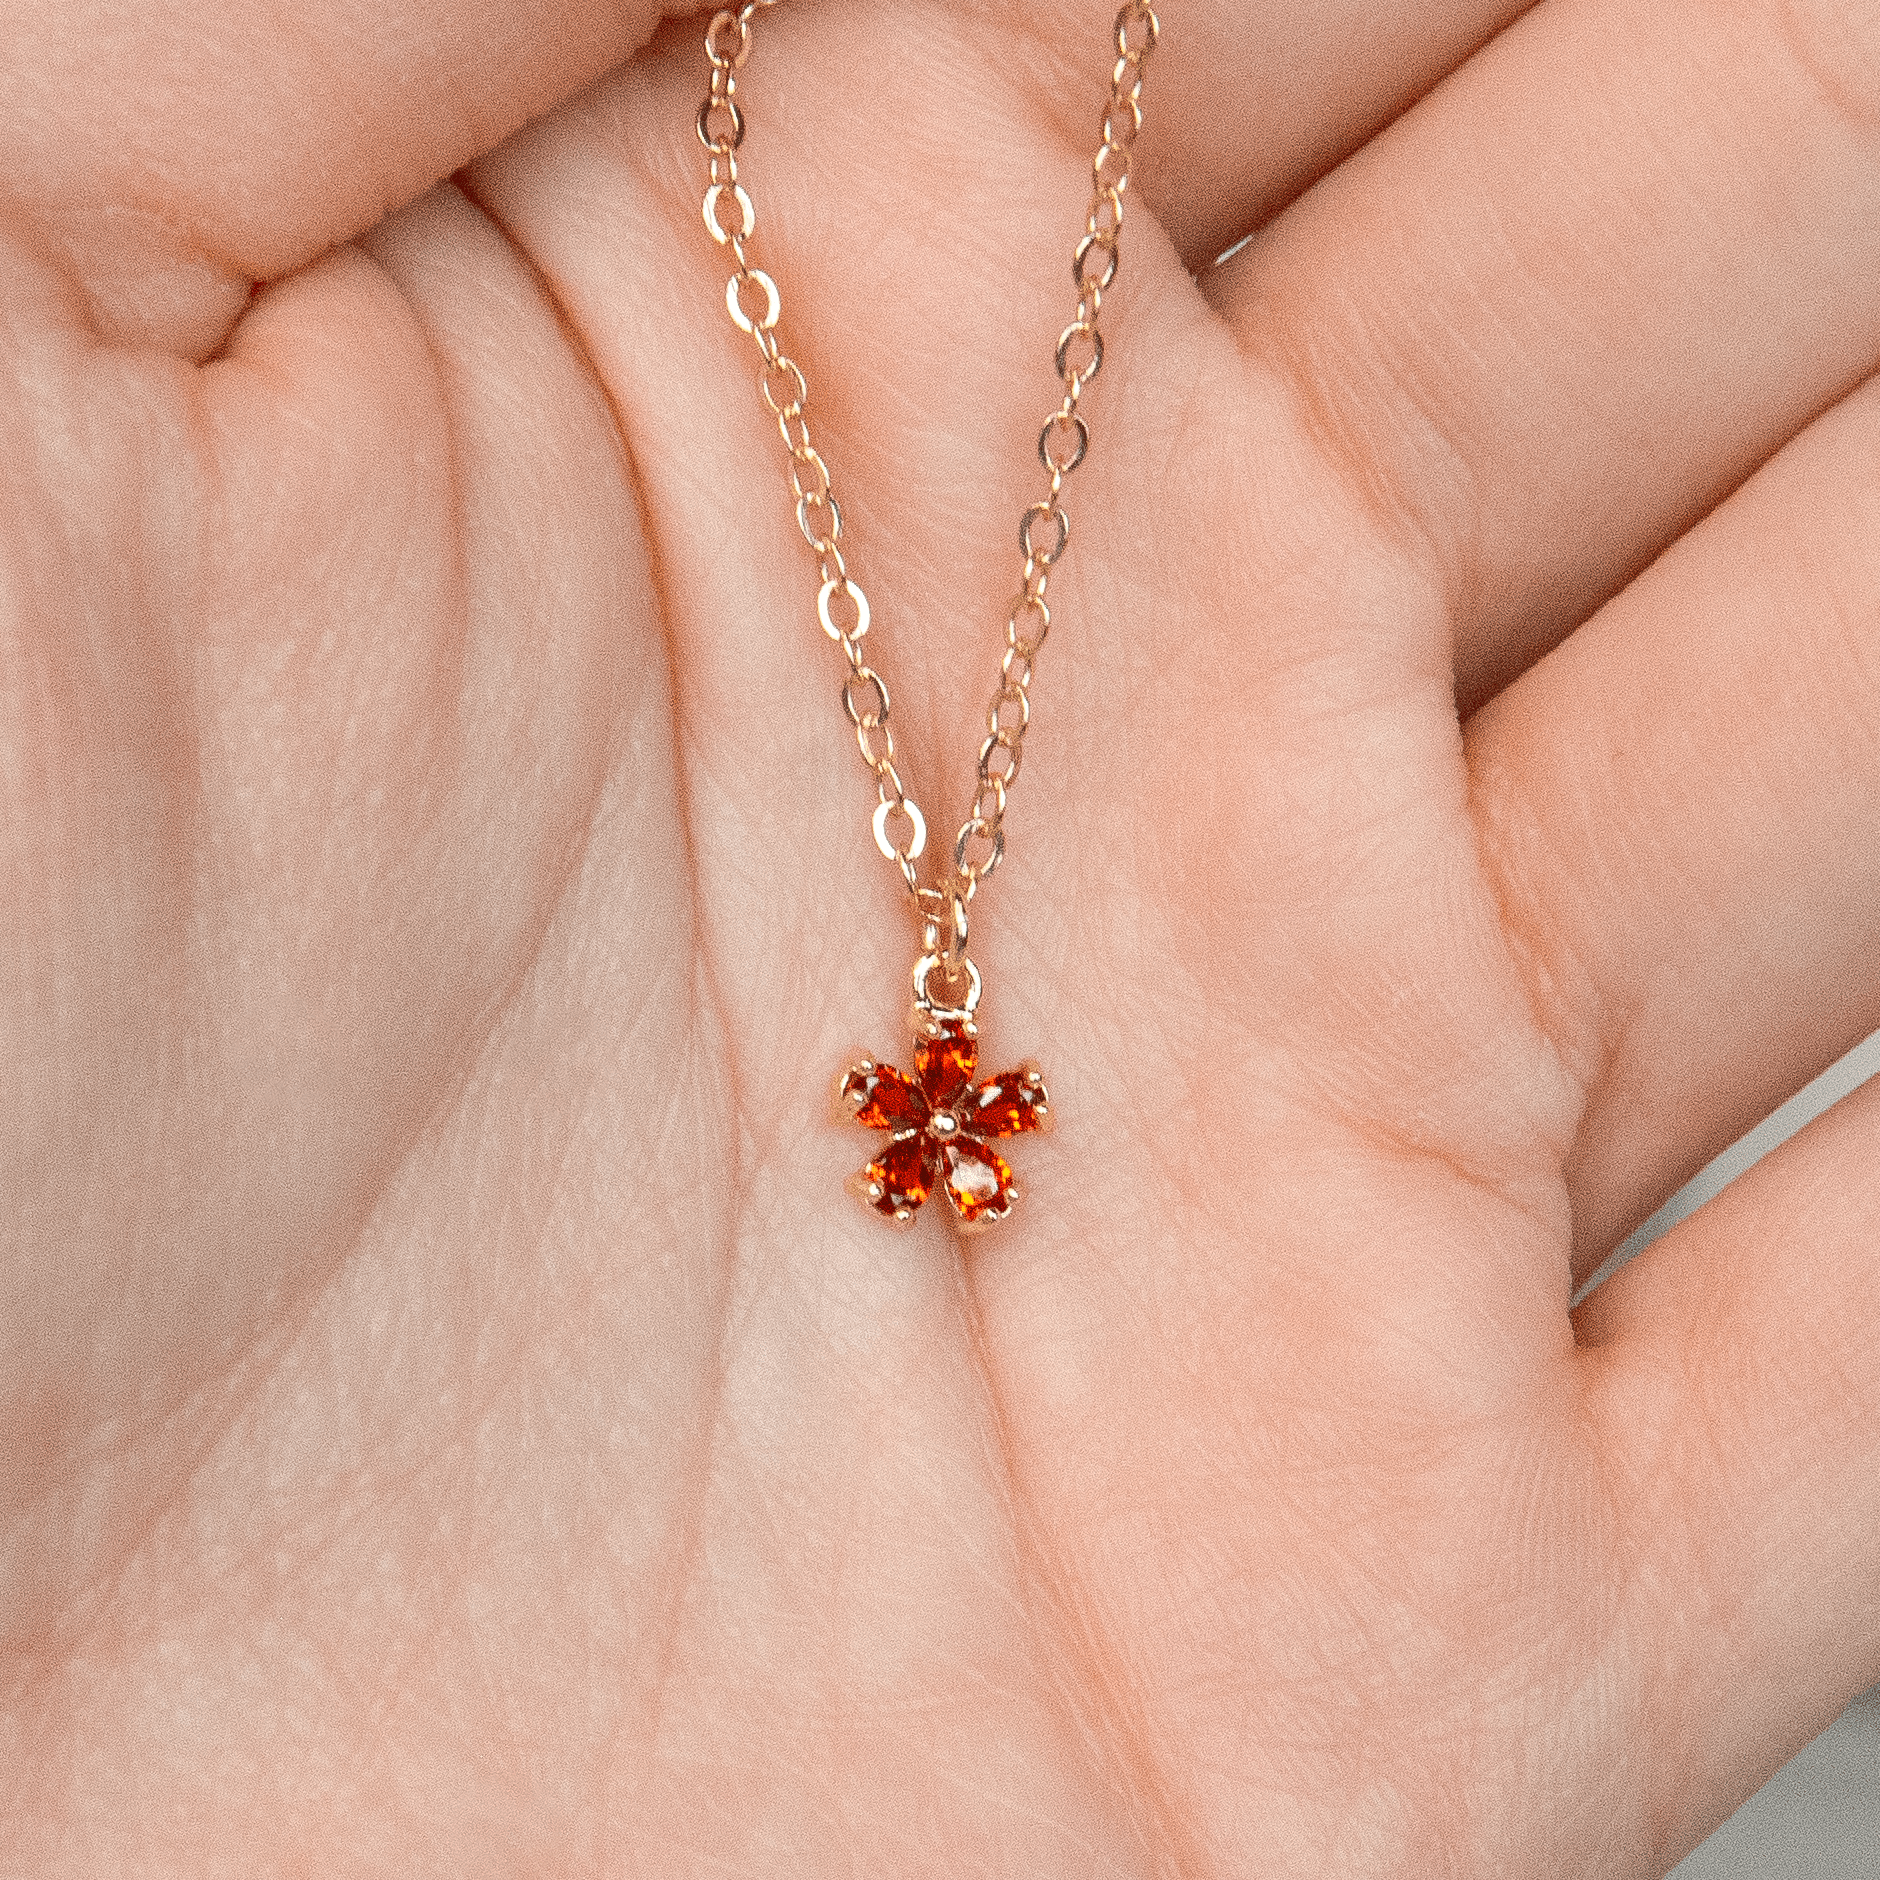 14K Gold-Filled Sunlit Blossom Necklace